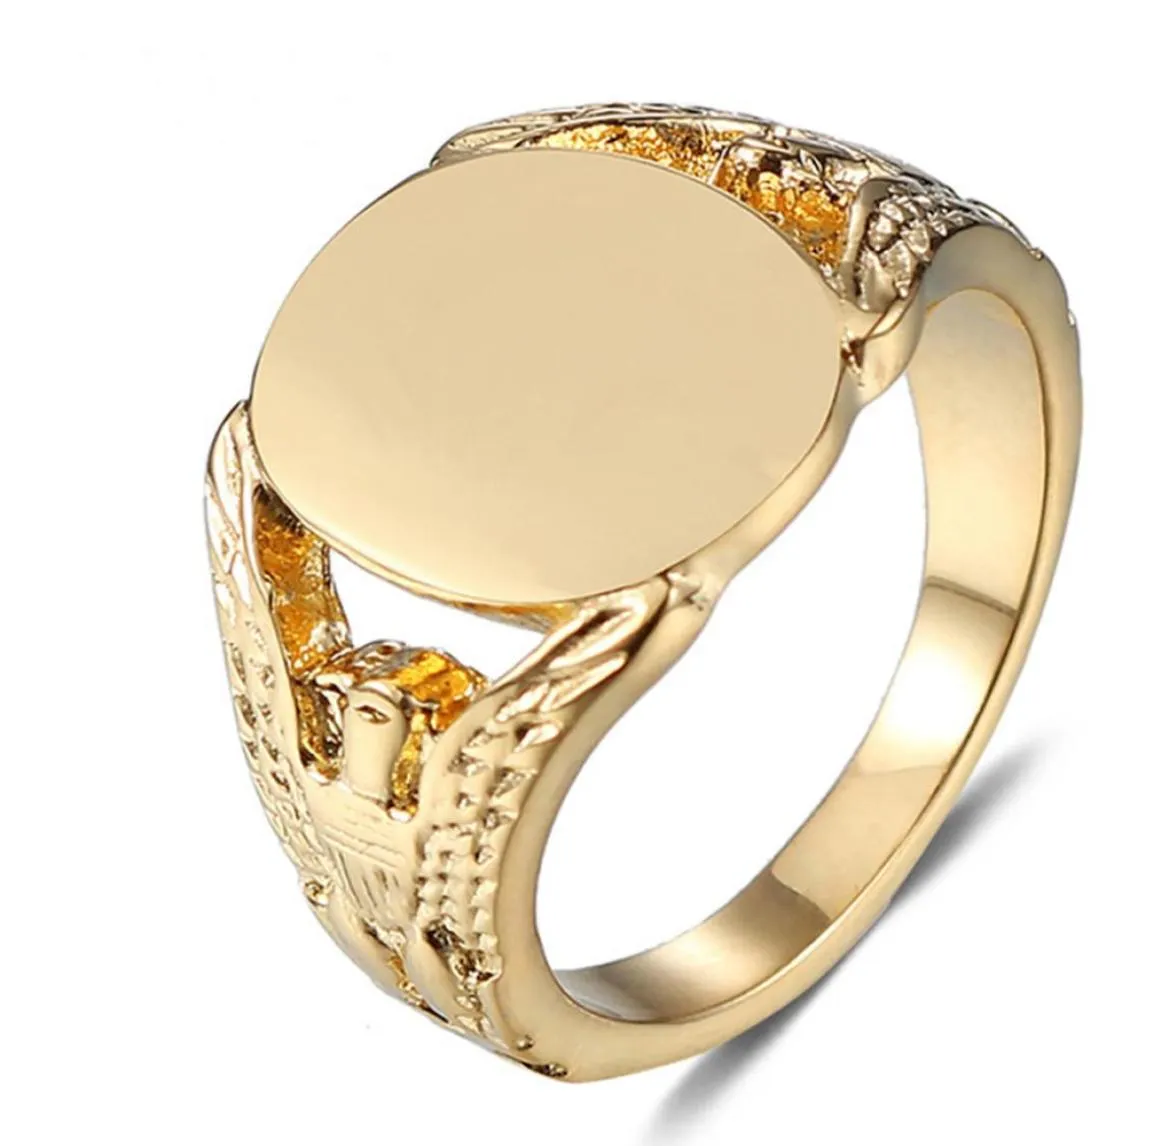 716 multi -size grote ring mannelijk vrouwelijk roestvrij staal vergulde gouden ovale vorm gladde vinger sieraden onschadelijk milieubescherming8084392